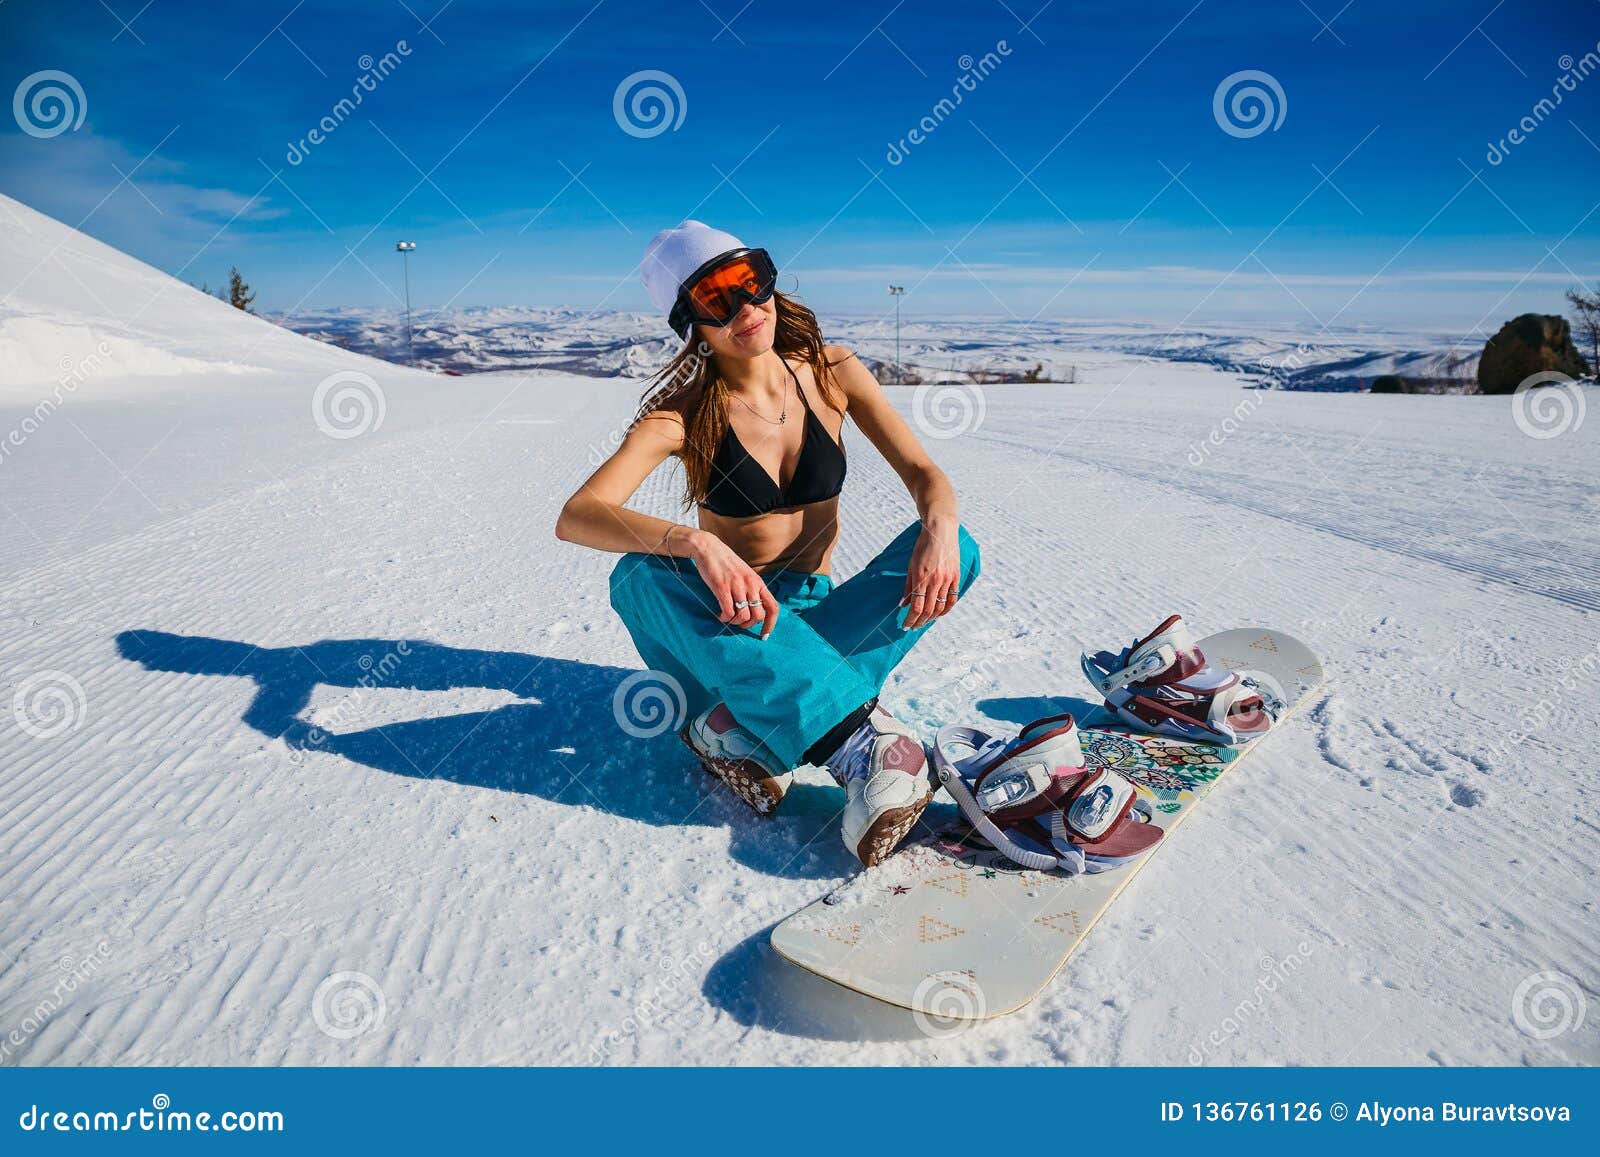 Snowboarder Atractivo De La Mujer En La Máscara Anaranjada Que Se Sienta En  La Nieve Mujer En Traje De Baño En Invierno Foto de archivo - Imagen de  swimsuit, hembra: 136761126